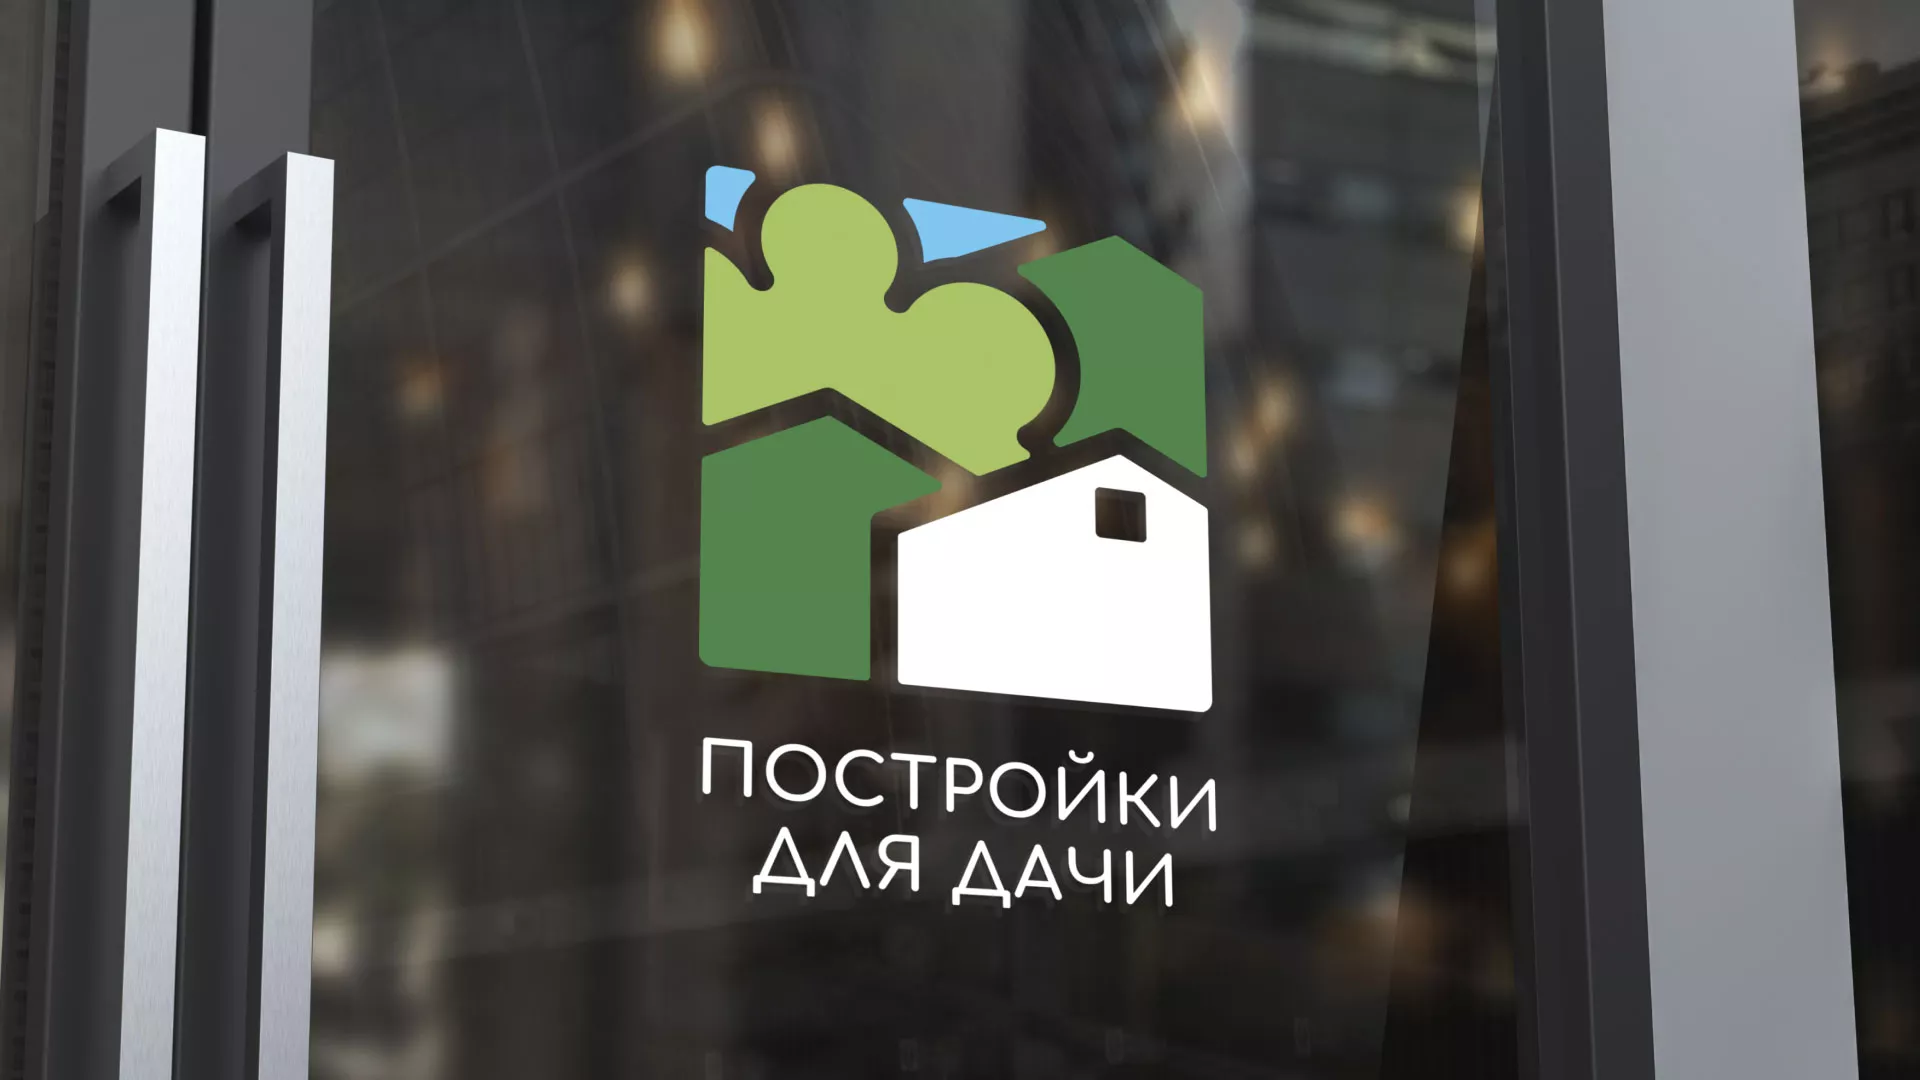 Разработка логотипа в Ладушкине для компании «Постройки для дачи»